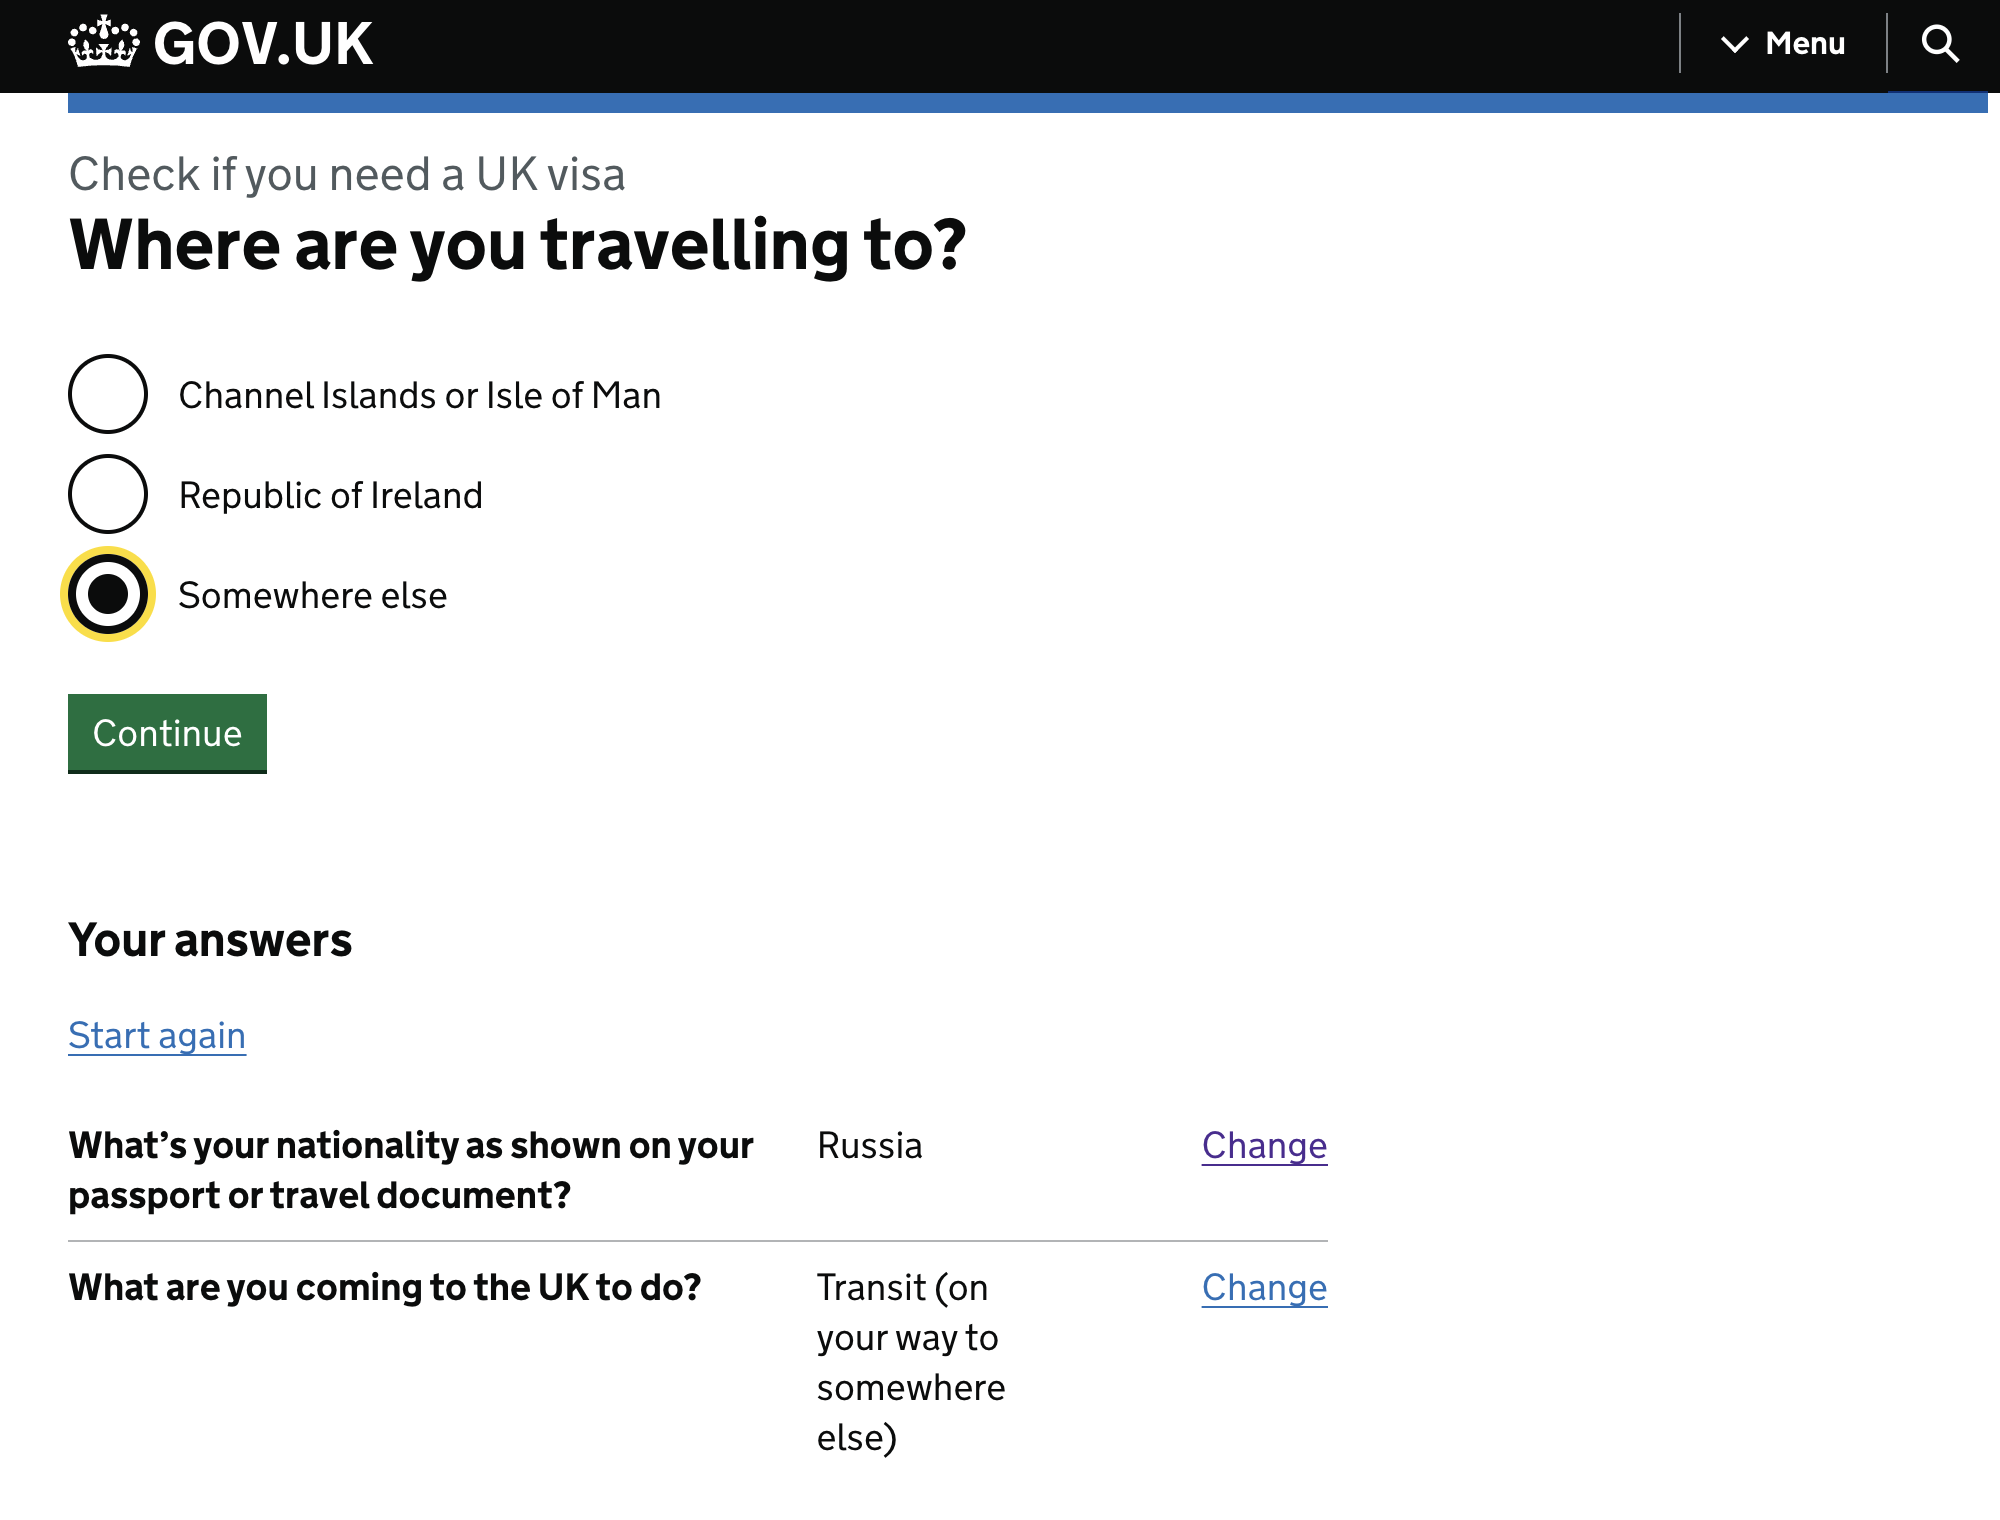 Проверить, нужна ли виза для транзита, можно с помощью теста на сайте gov.uk. Для этого надо ответить на несколько вопросов. Я выбрала российский паспорт и указала, что планирую лететь через Великобританию транзитом в другую страну